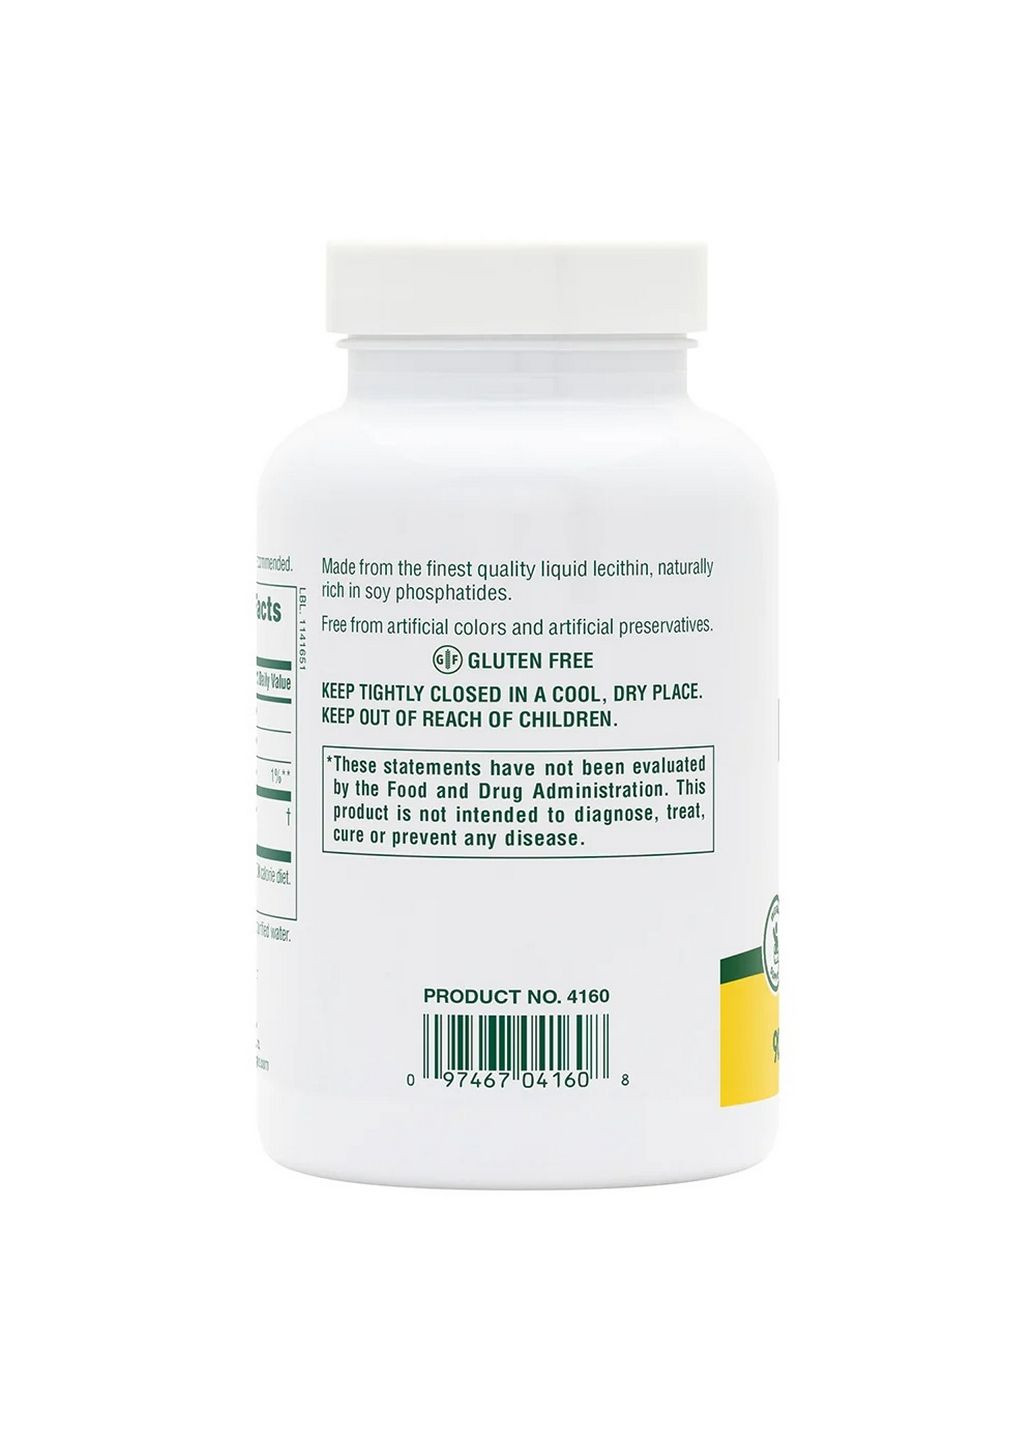 Натуральная добавка Lecithin 1200 mg, 90 капсул Natures Plus (293338021)